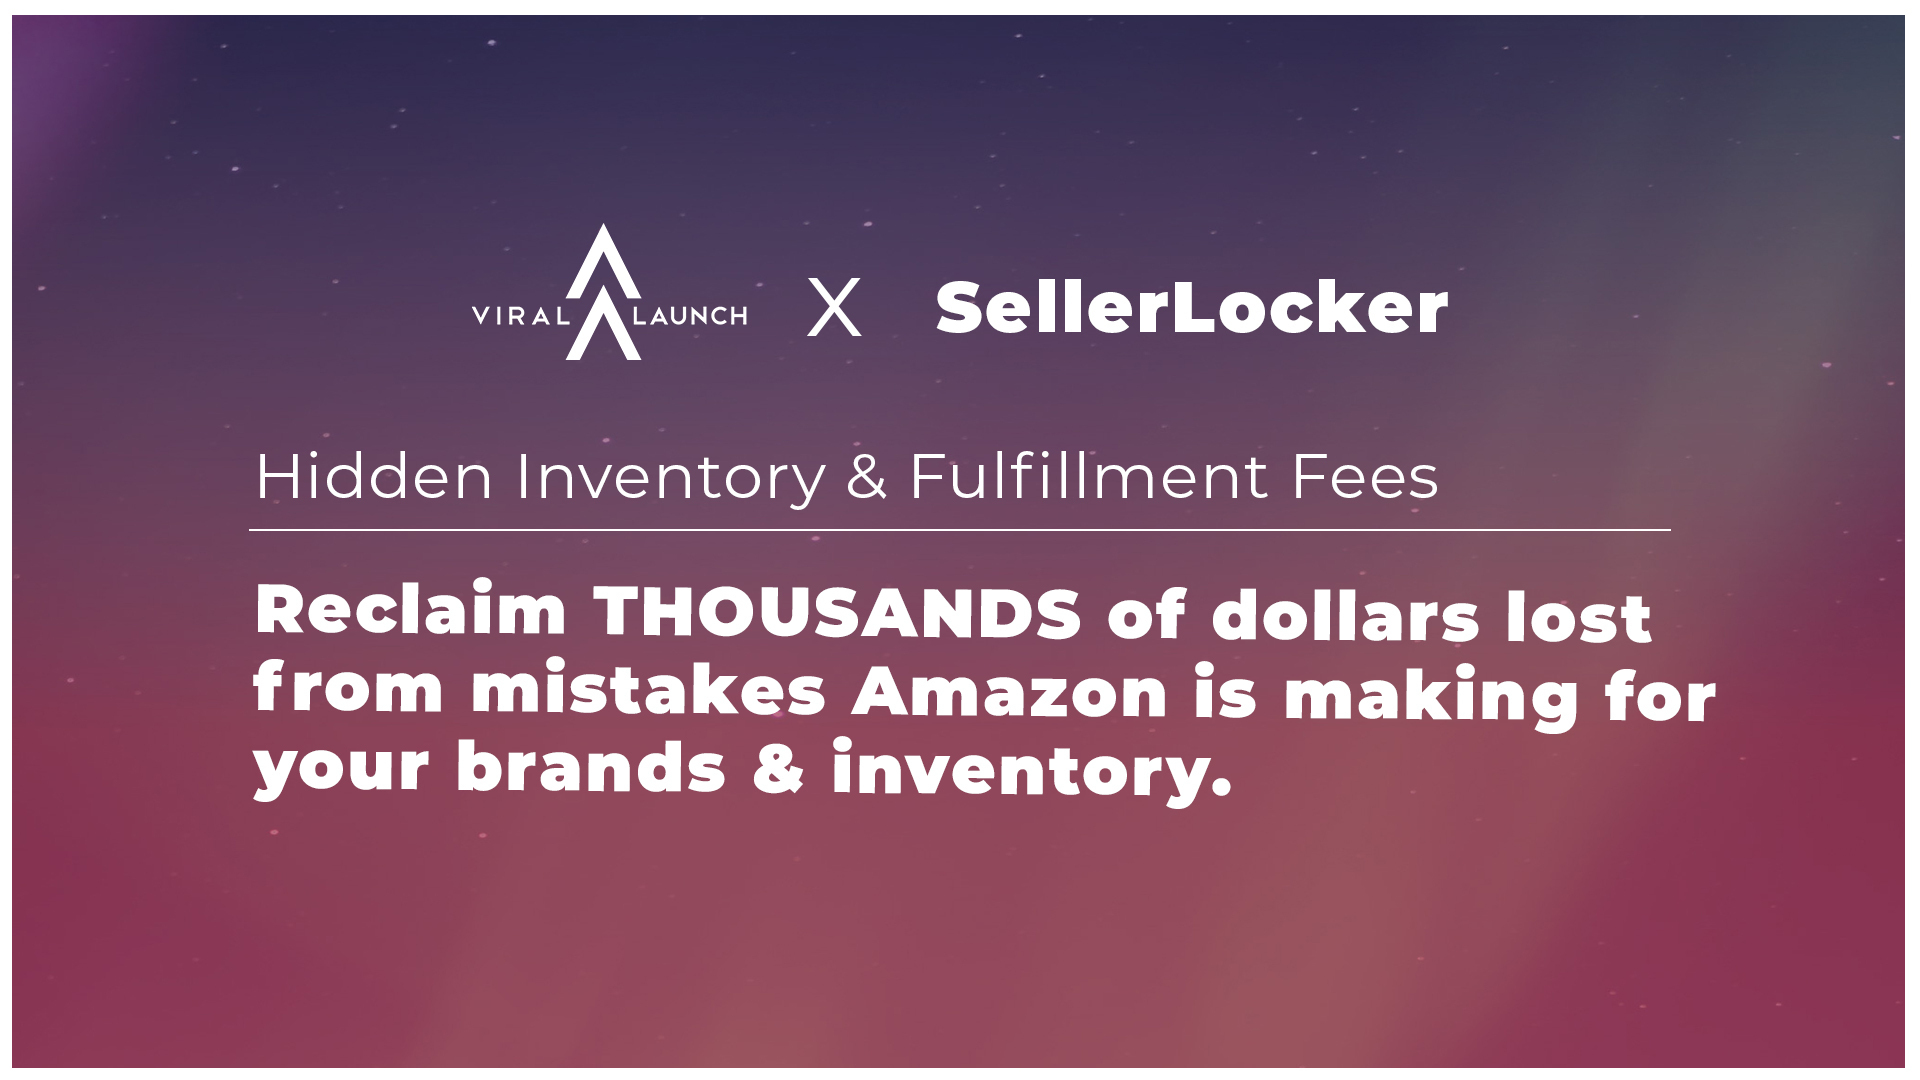 Viral Launch x SellerLocker: Hidden Inventory & Fulfillment Fees